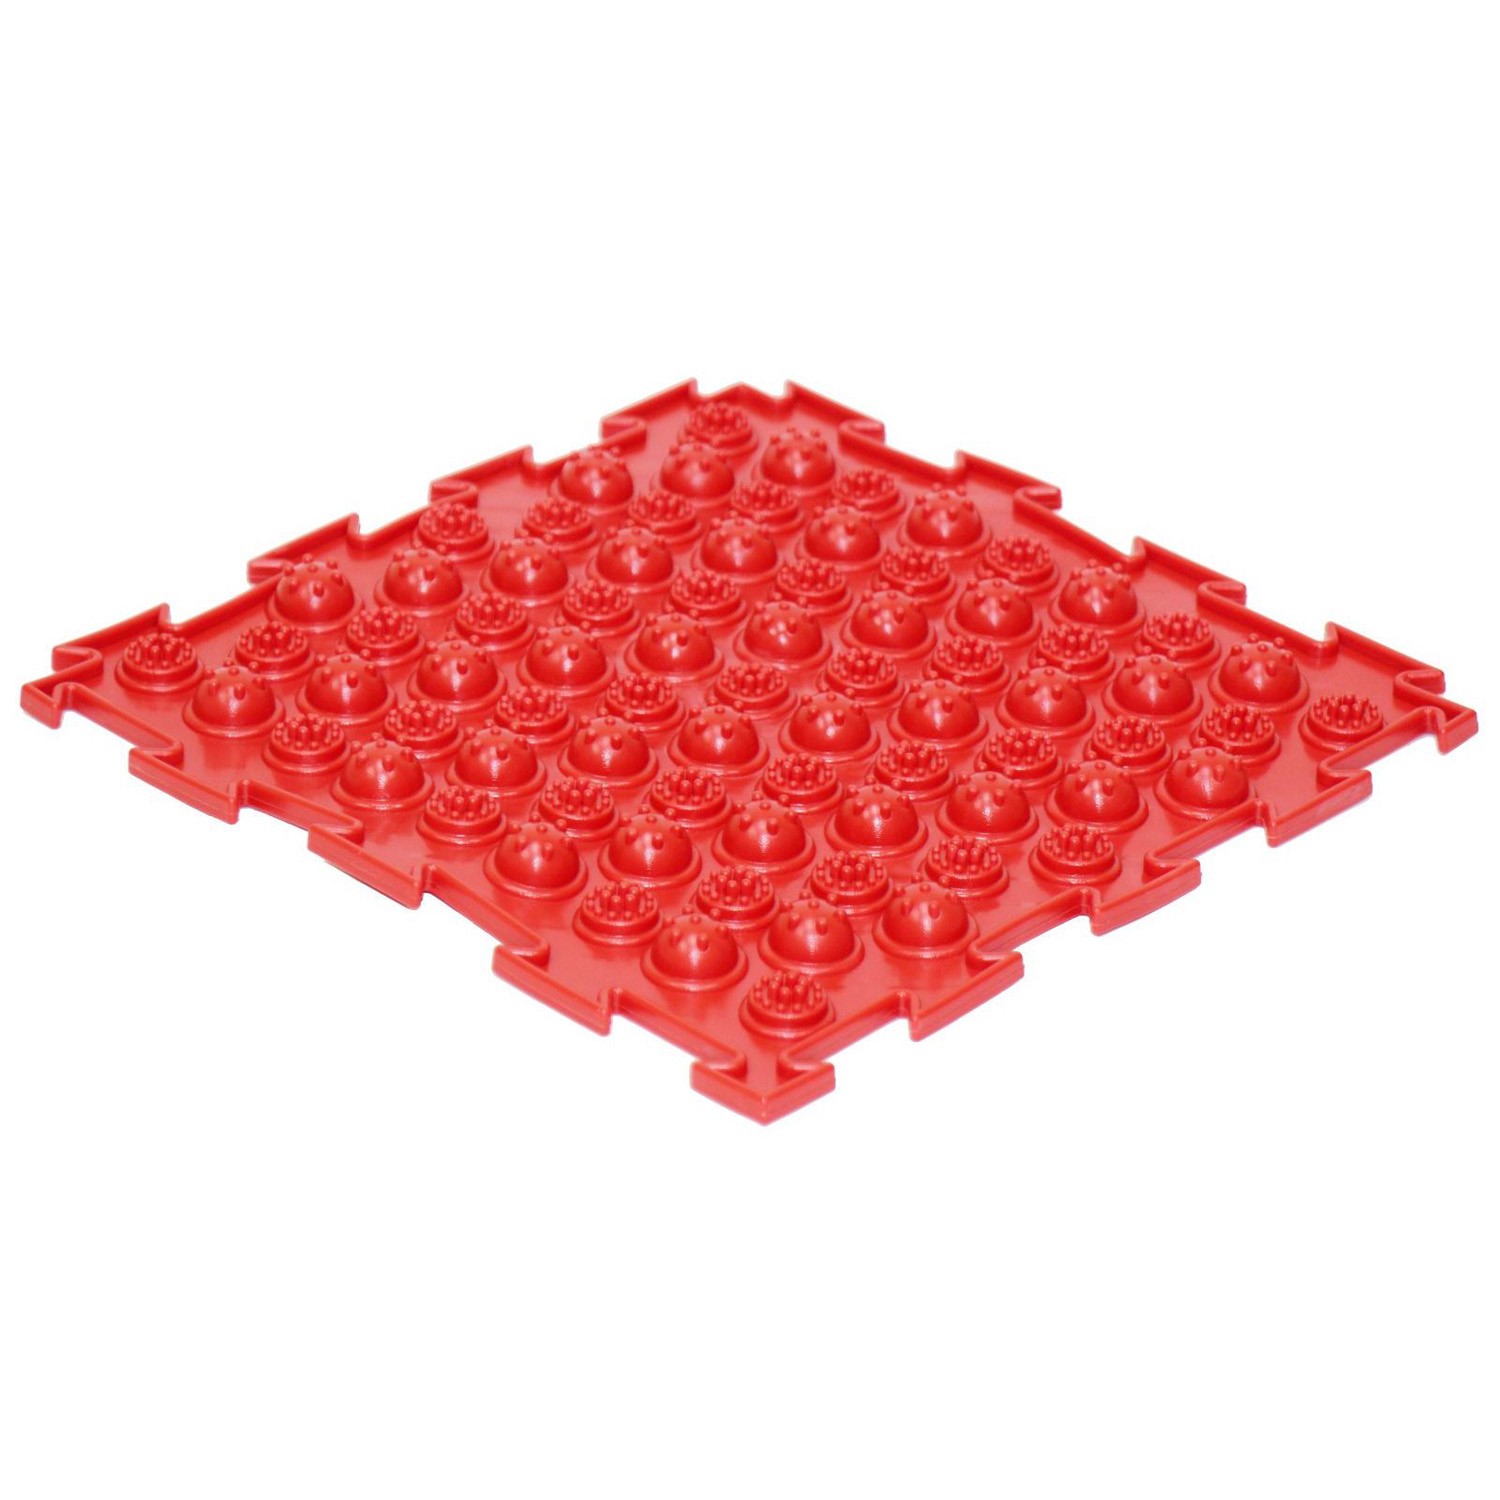 Массажный детский коврик пазл Ортодон развивающий игровой Колючки жёсткие красный 1 пазл - фото 1